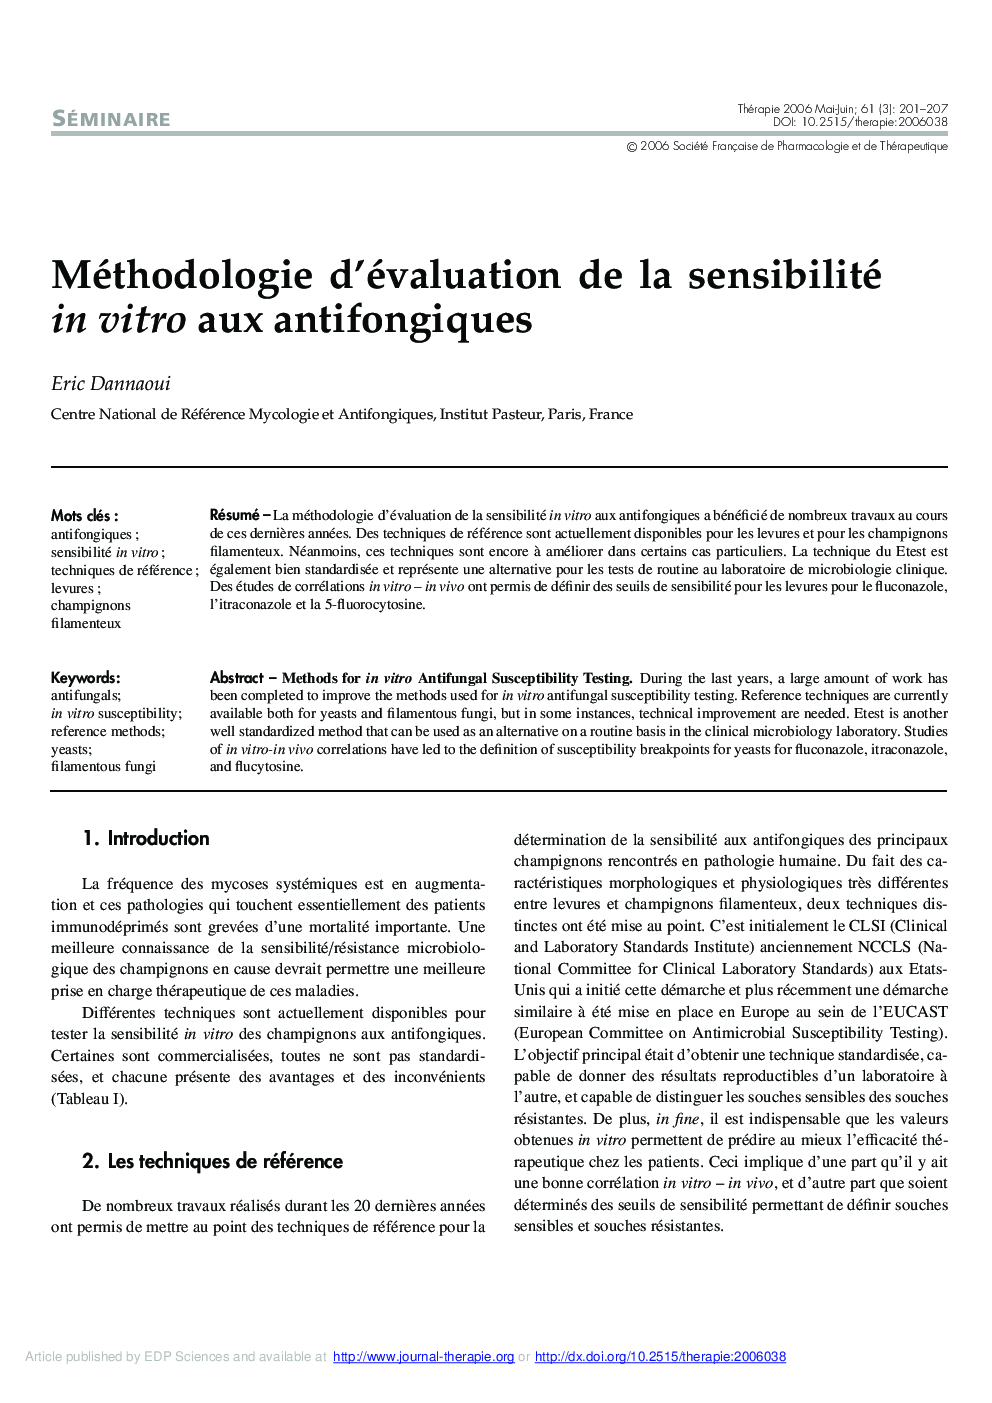 Méthodologie d'évaluation de la sensibilité in vitro aux antifongiques